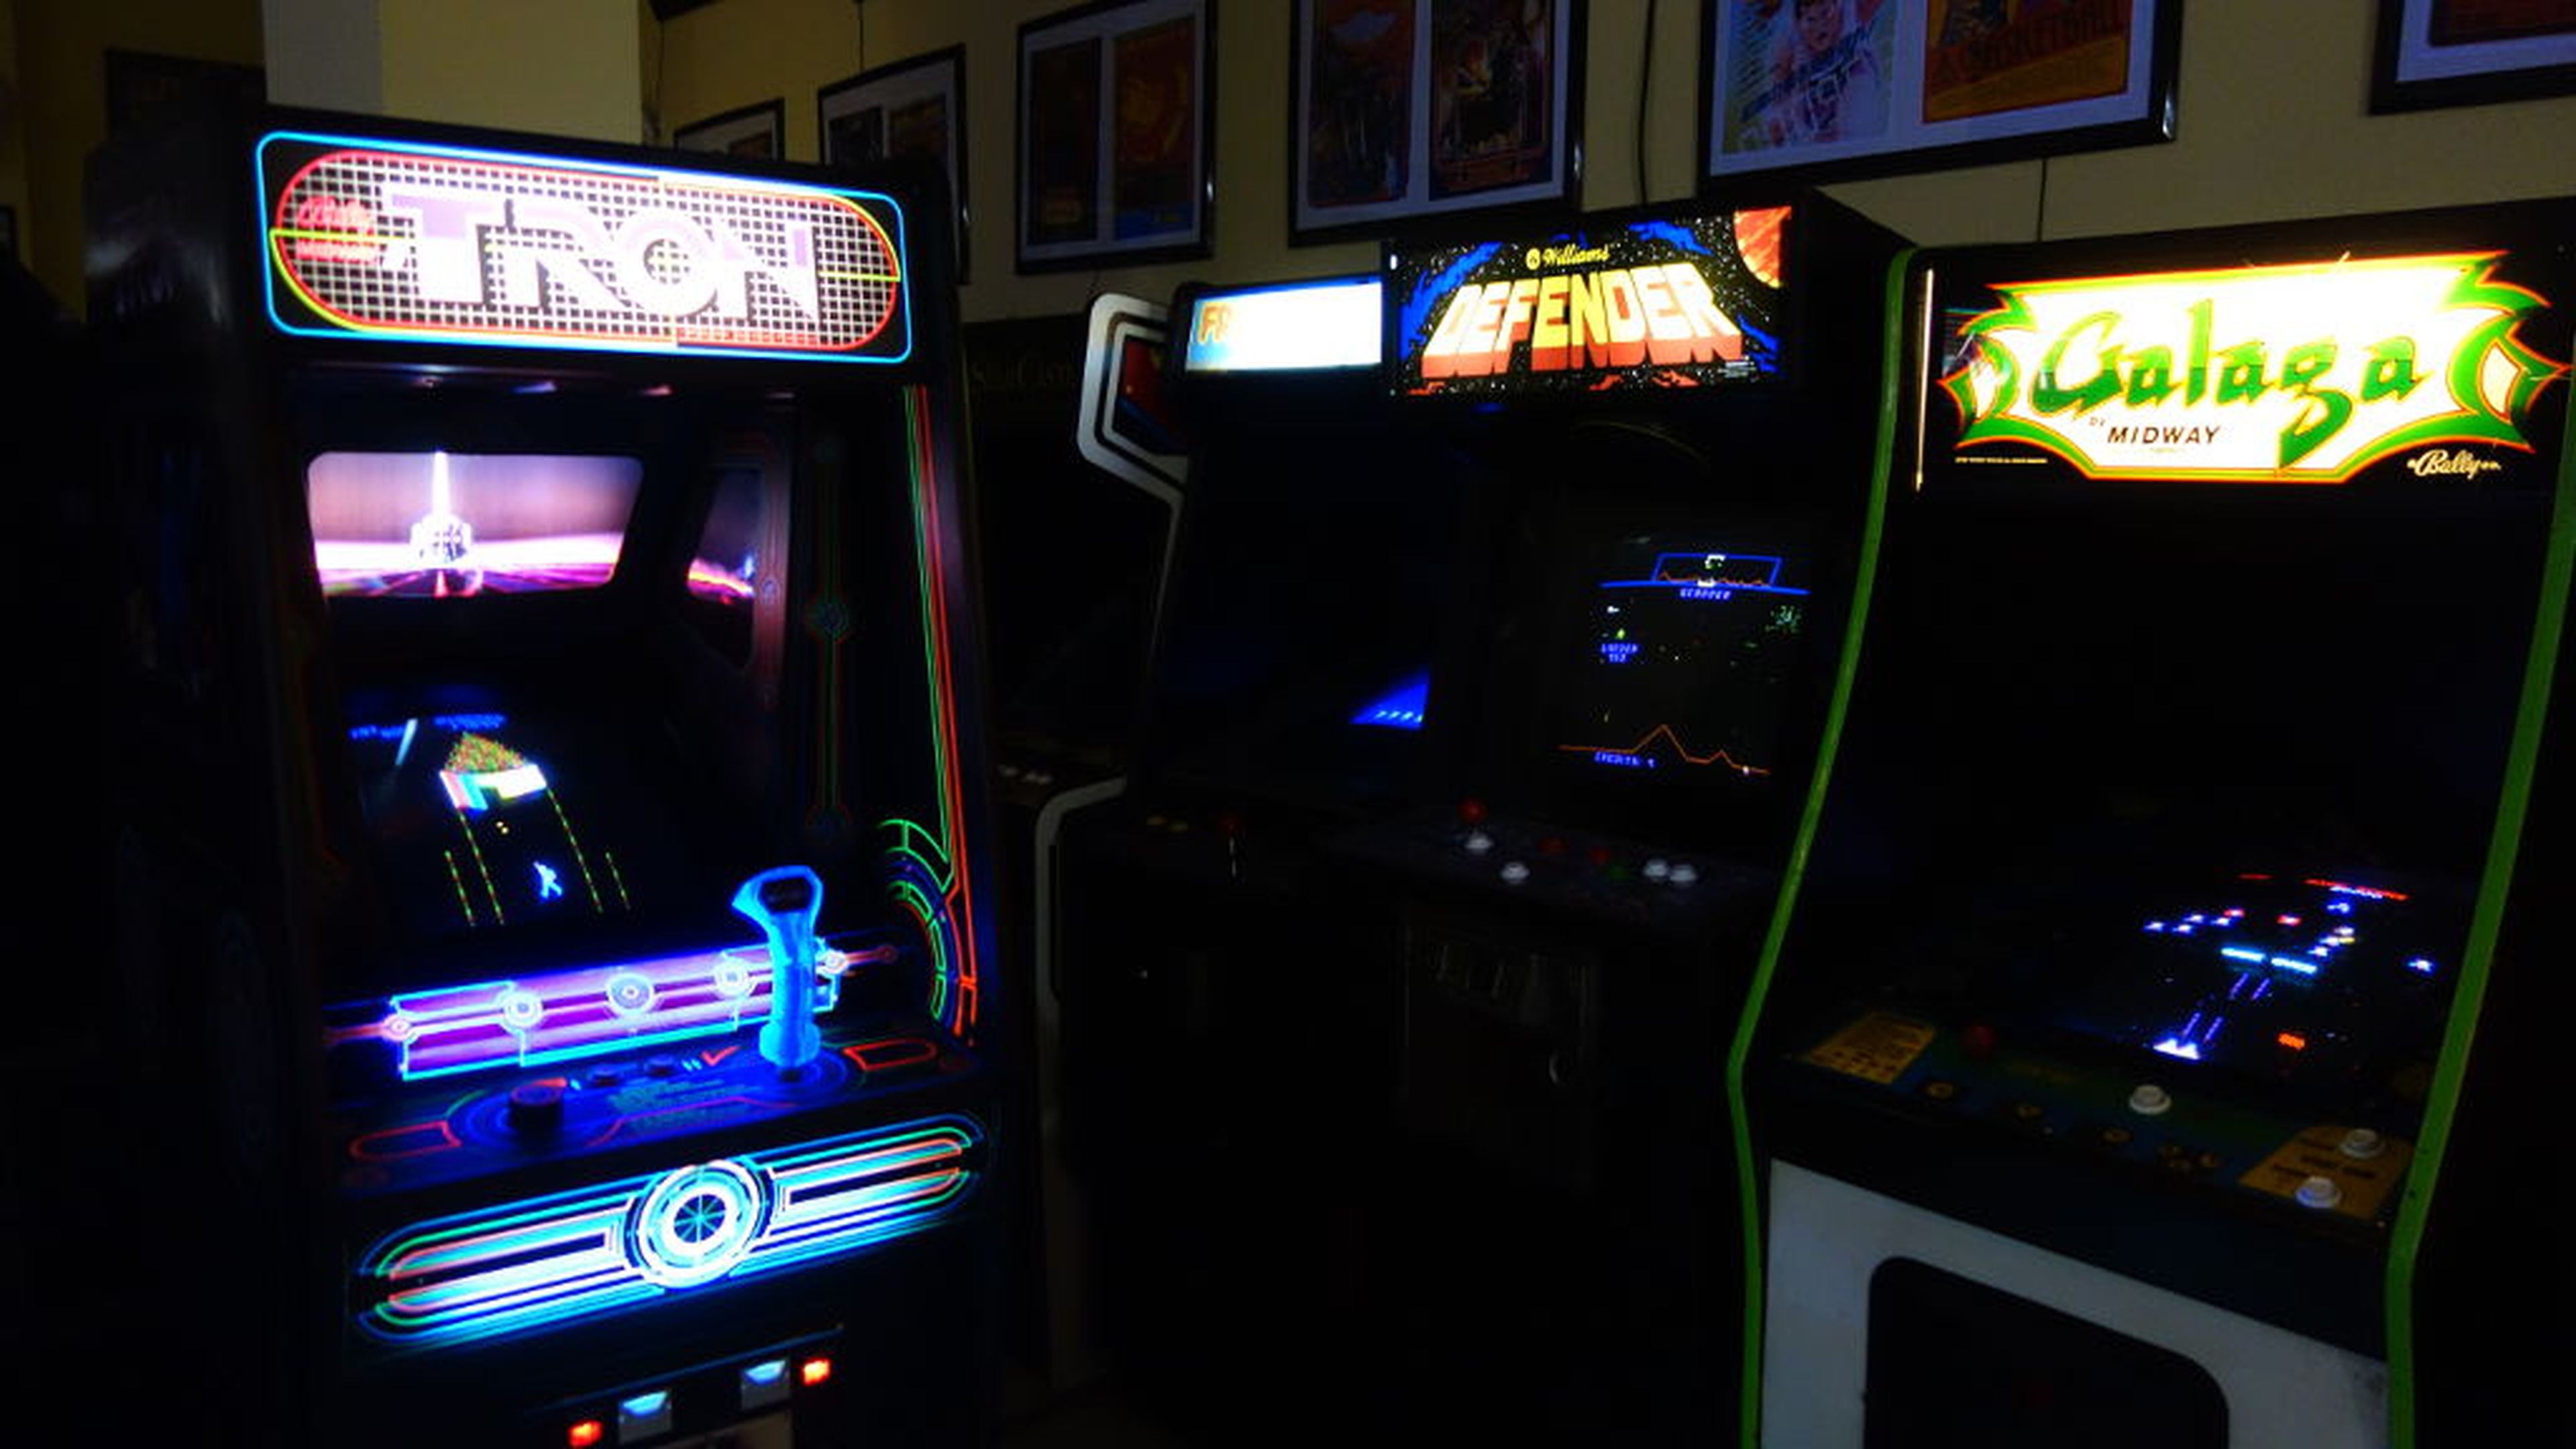 Museo del Videojuego Arcade Vintage